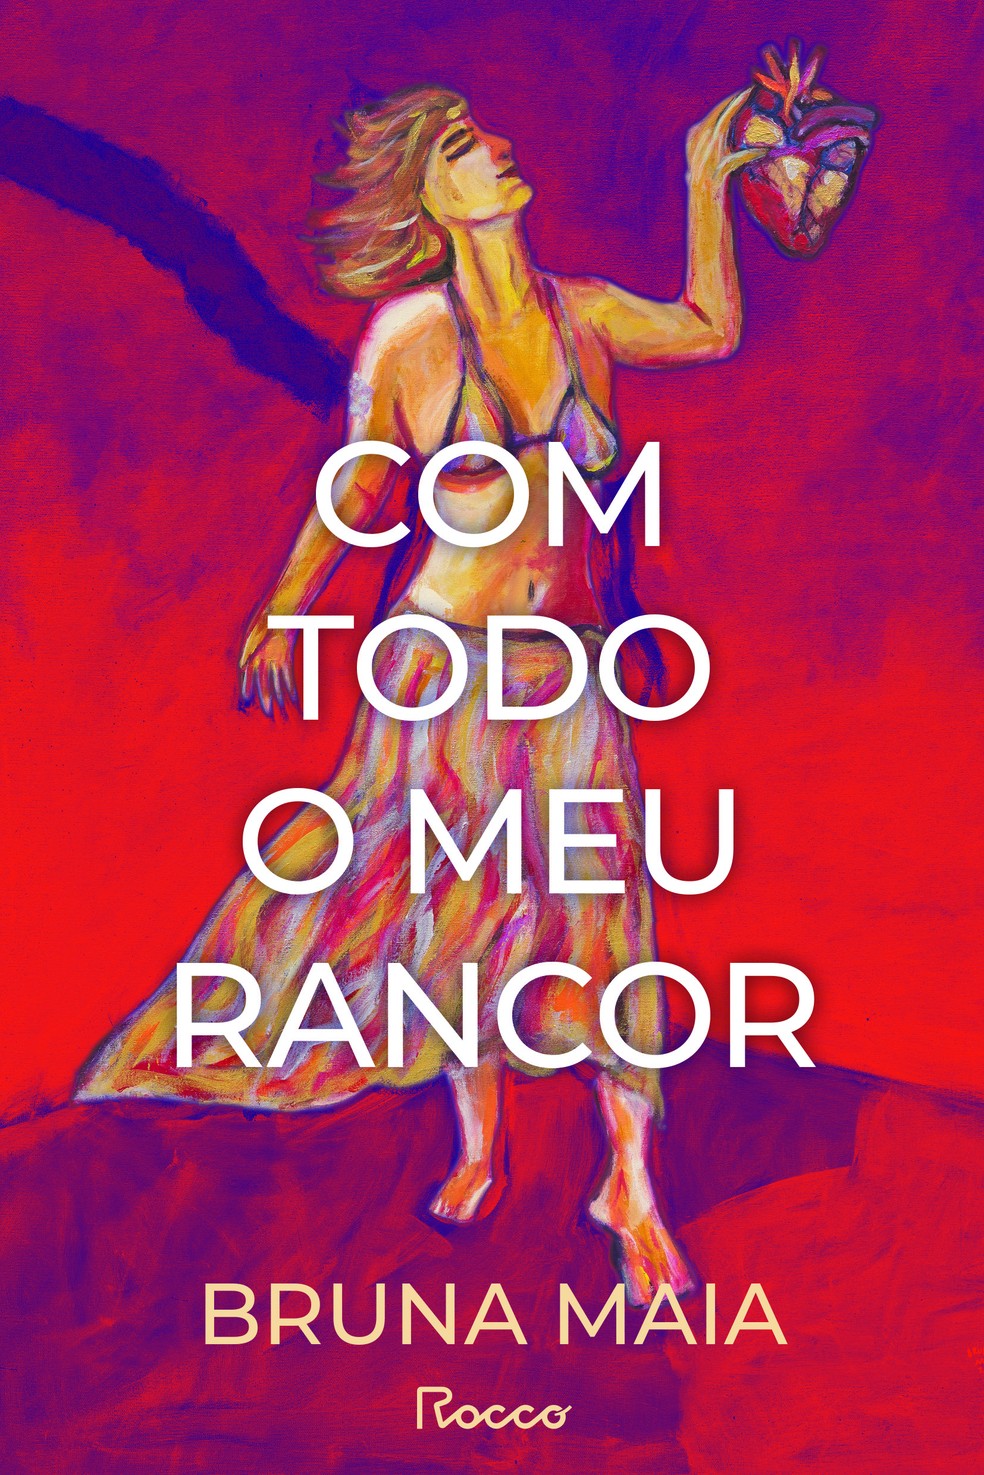 Capa de "Com todo o meu rancor", romance de estreia de Bruna Maia publicado pela Rocco — Foto: Reprodução